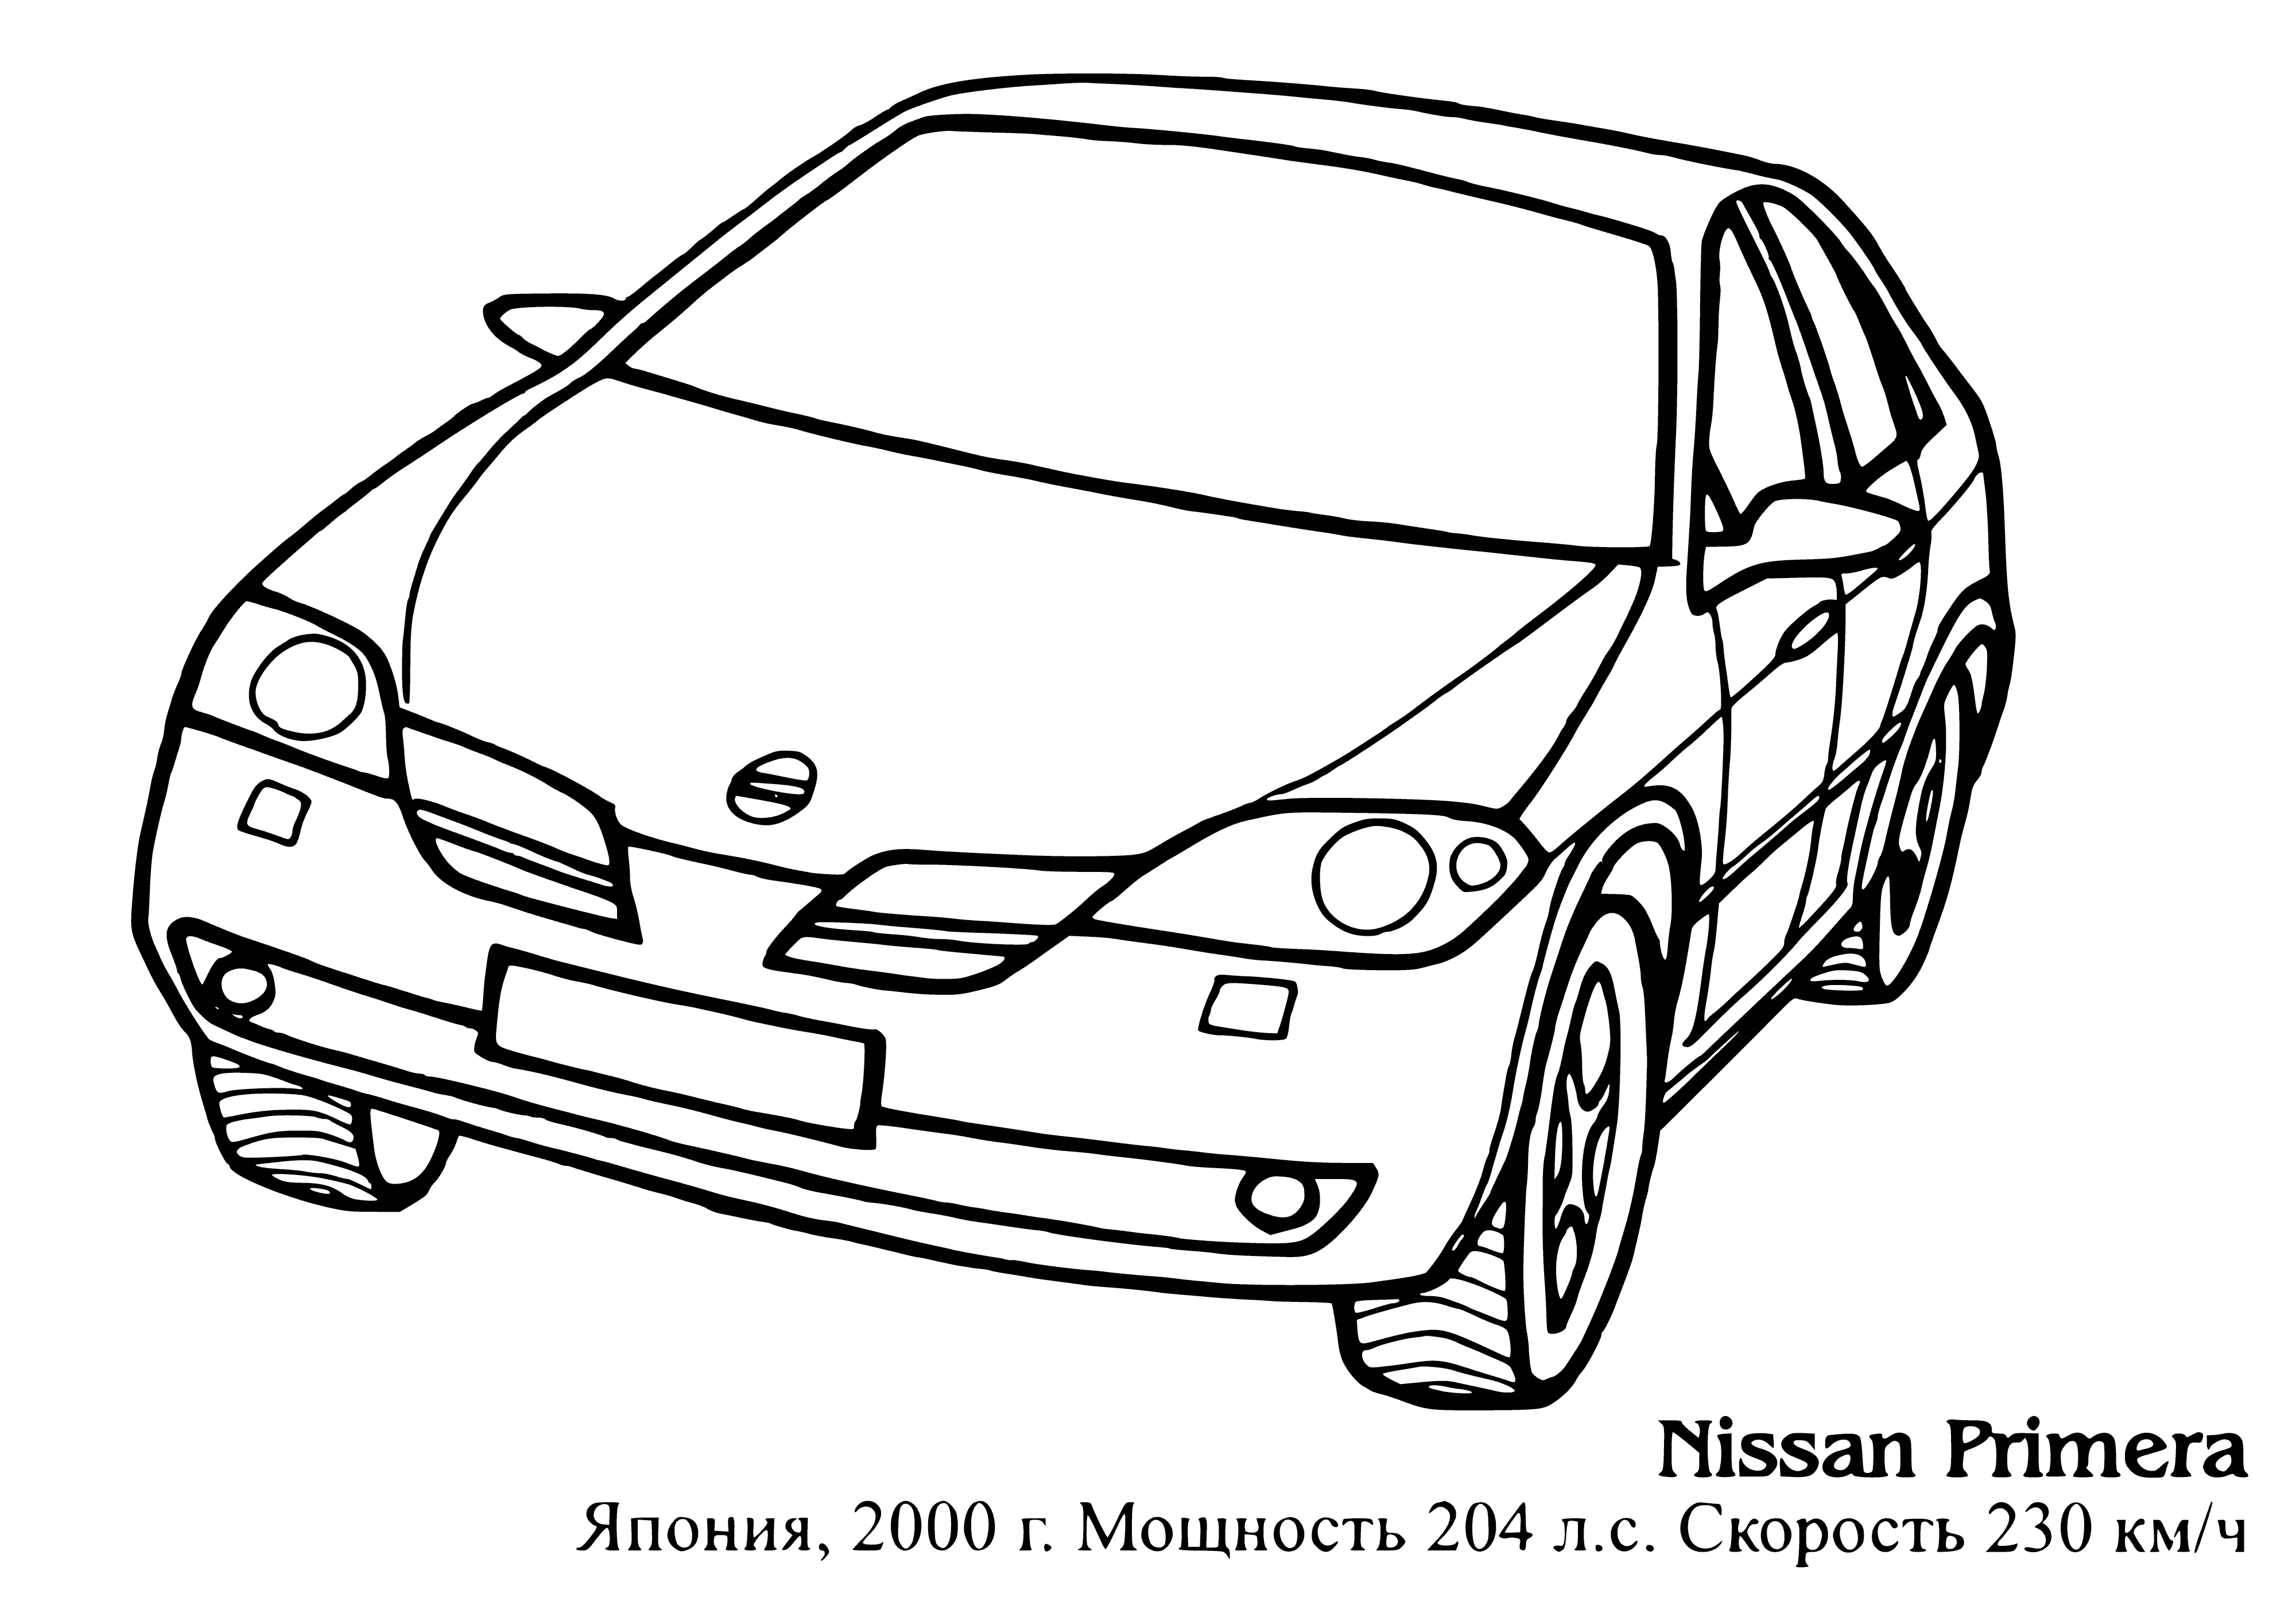 Nissan ilk boyama sayfası